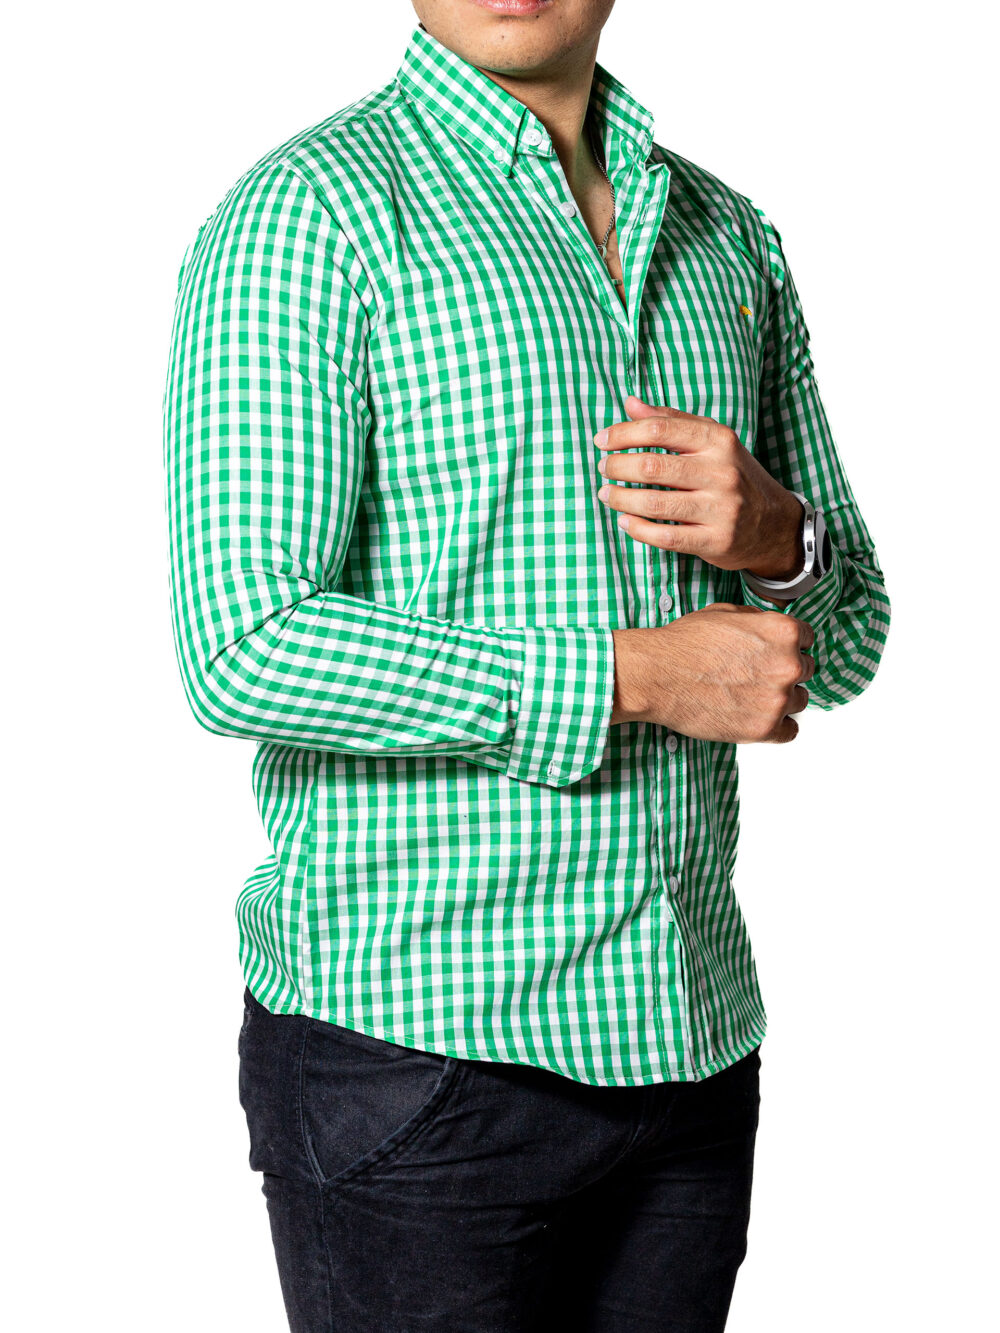 Camisa Hombre Casual Slim Fit Cuadros Verdes, Blancos 004 4